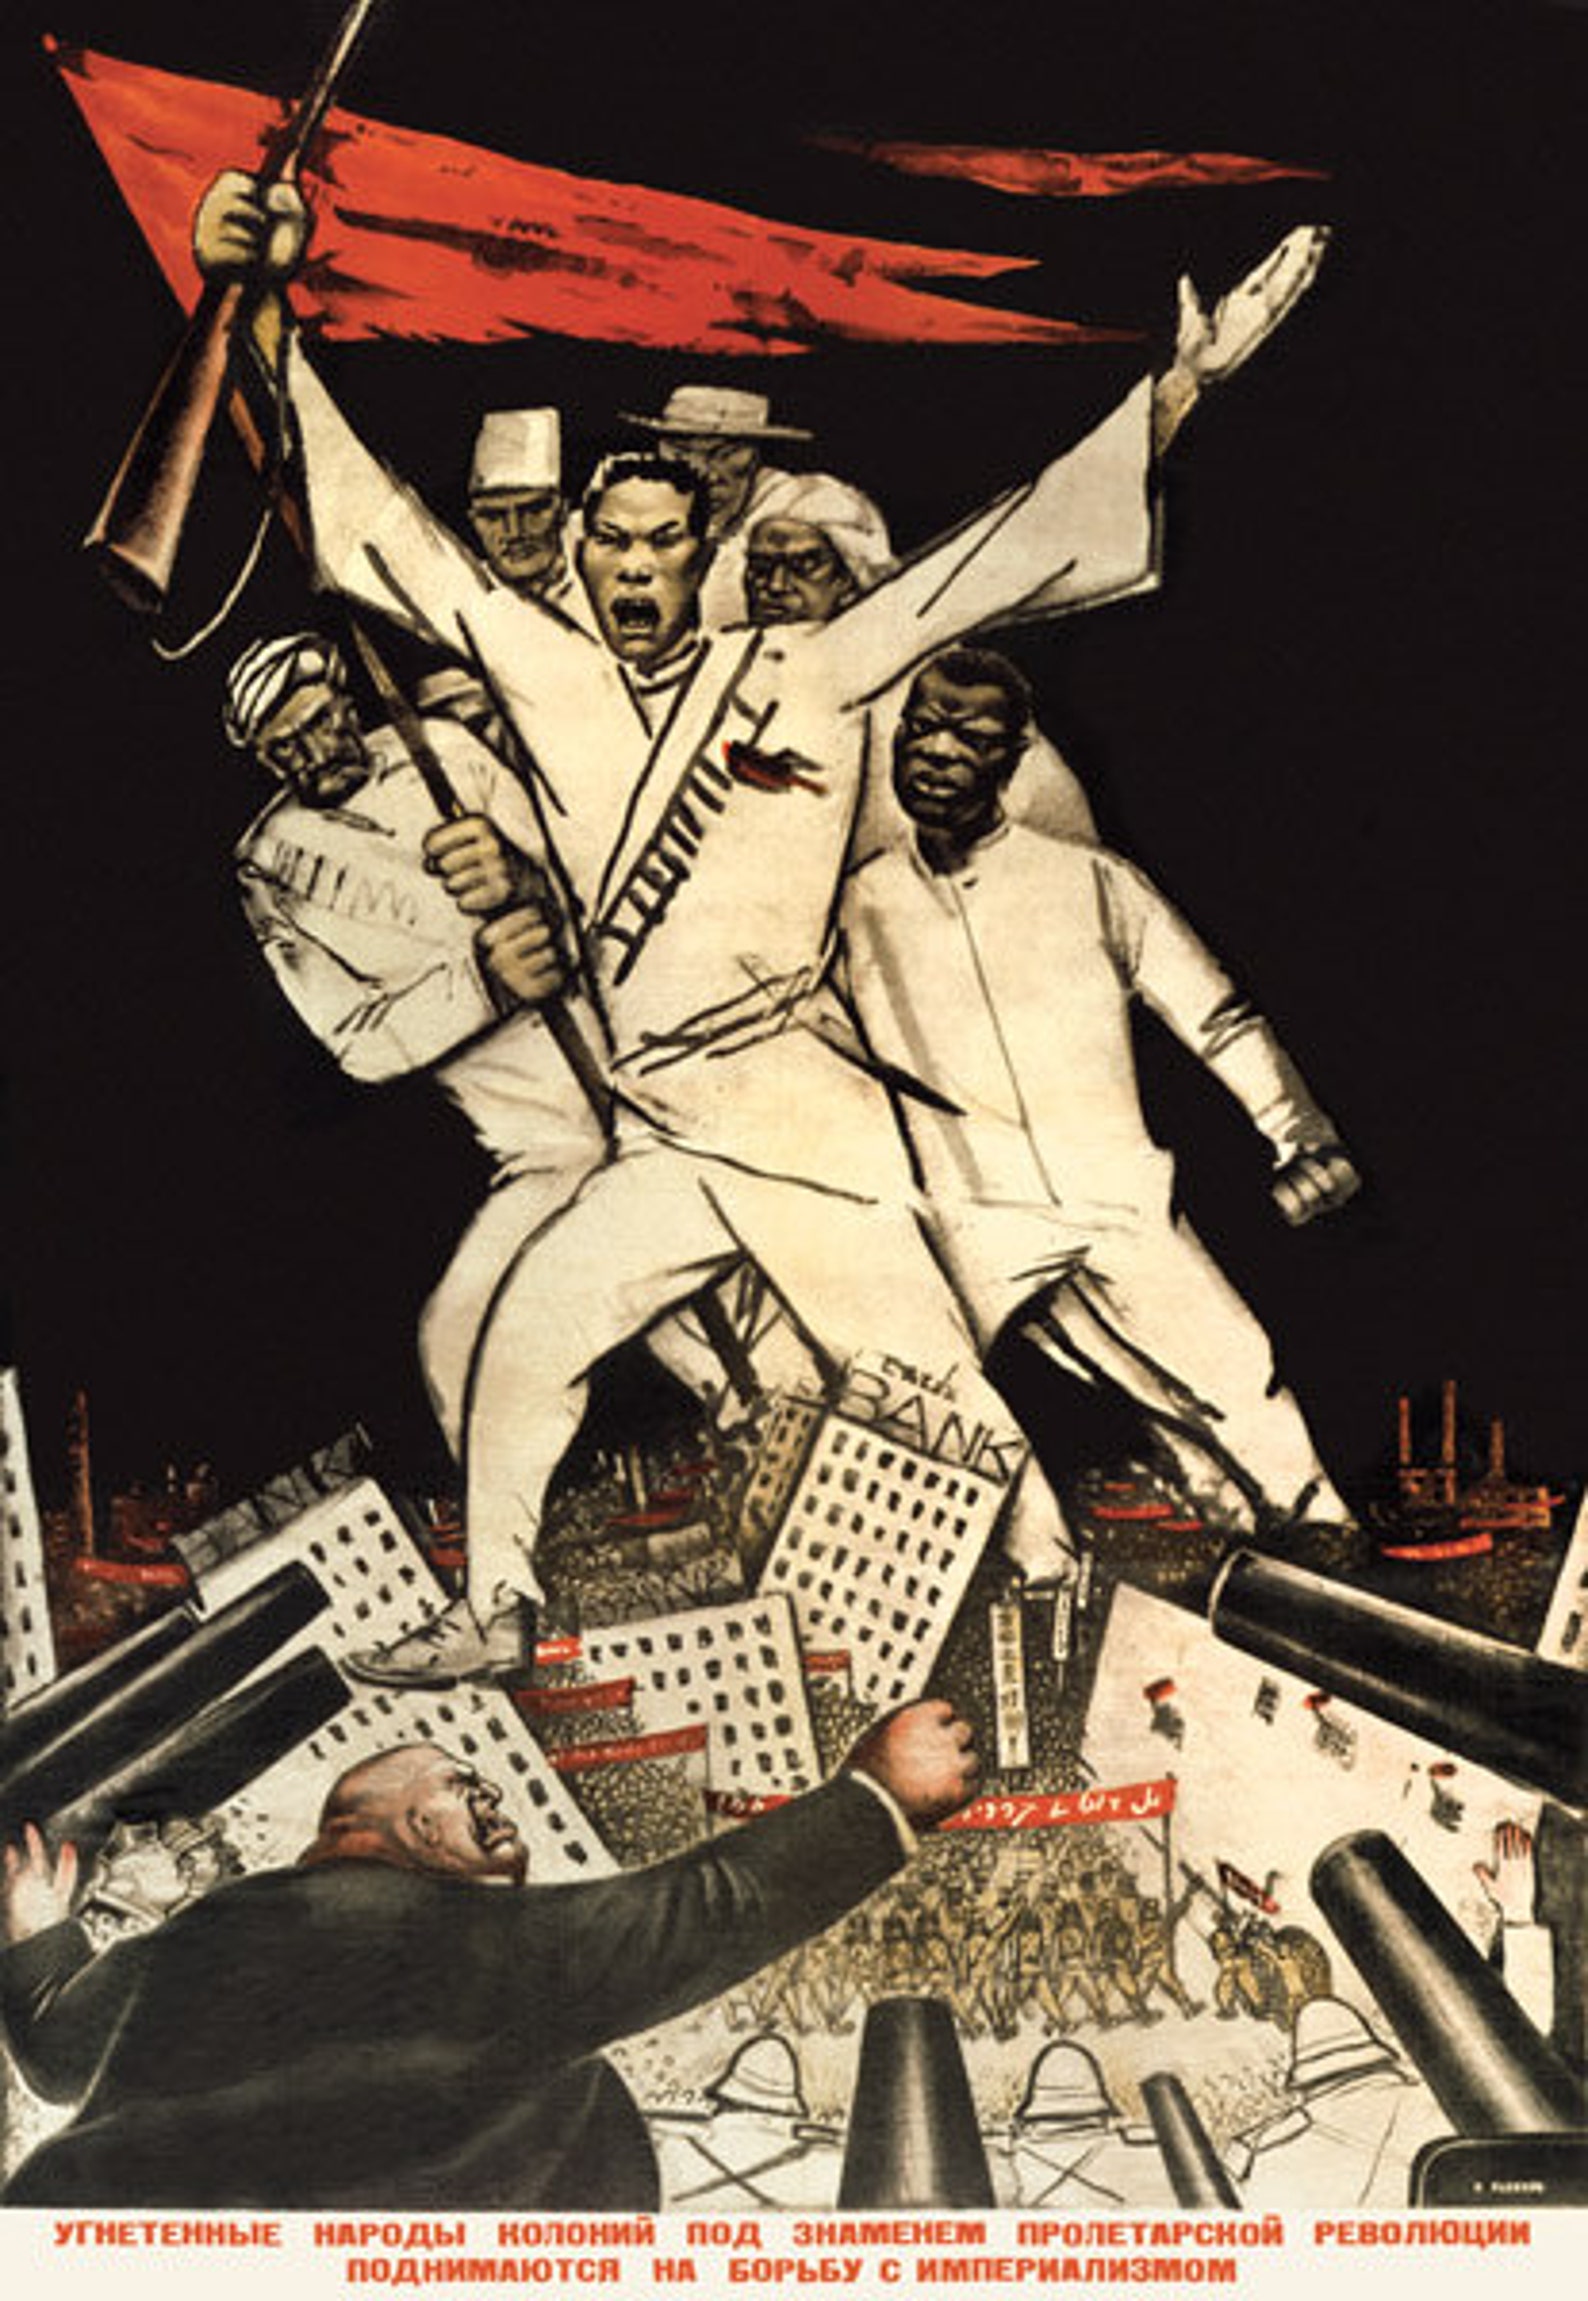 Социалистическая революция и пролетариат. Плакаты Октябрьской революции 1917. Мировая Коммунистическая революция. Мировая революция пролетариата.